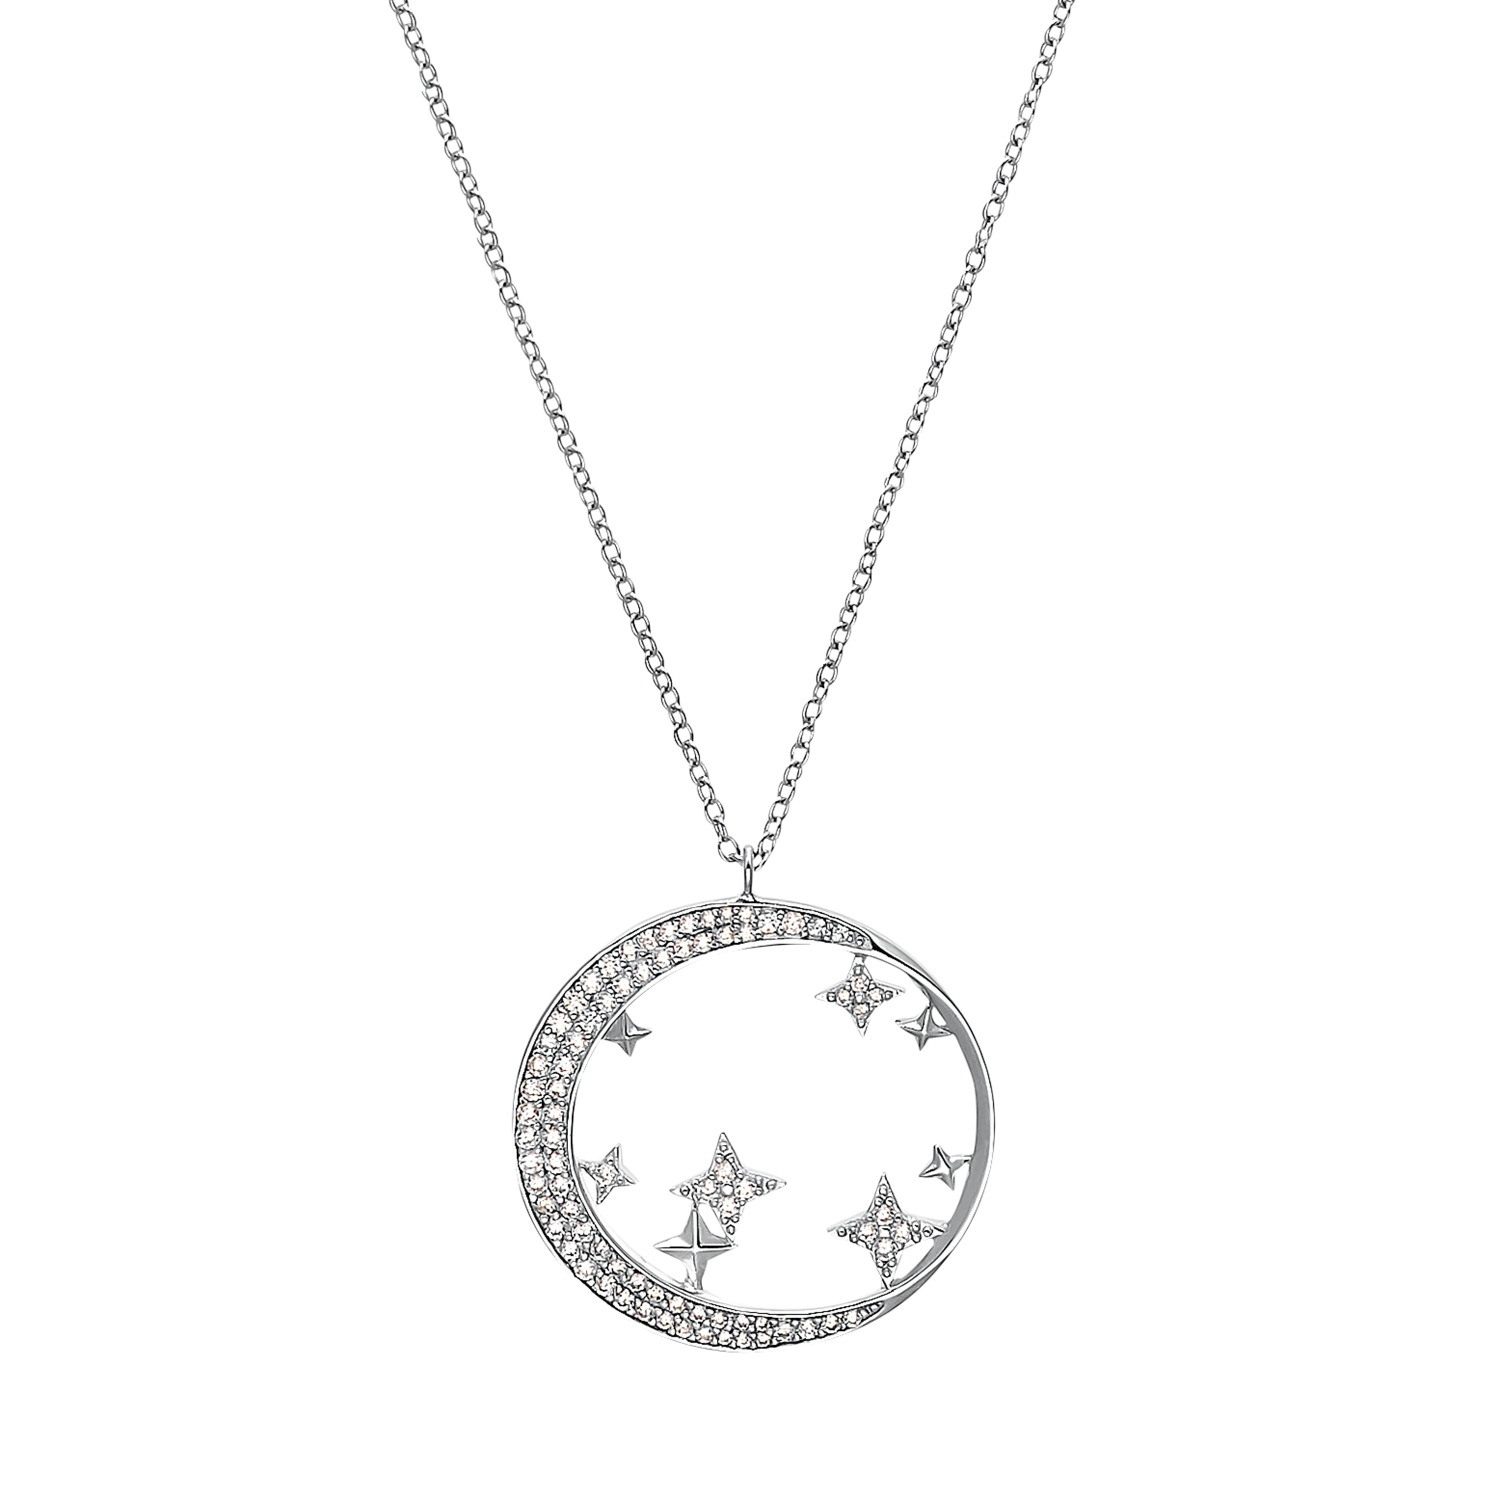 Kette mit Anhänger für Damen, Sterling Silber 925 rhodiniert, Zirkonia (synth.) |Mond/Sterne